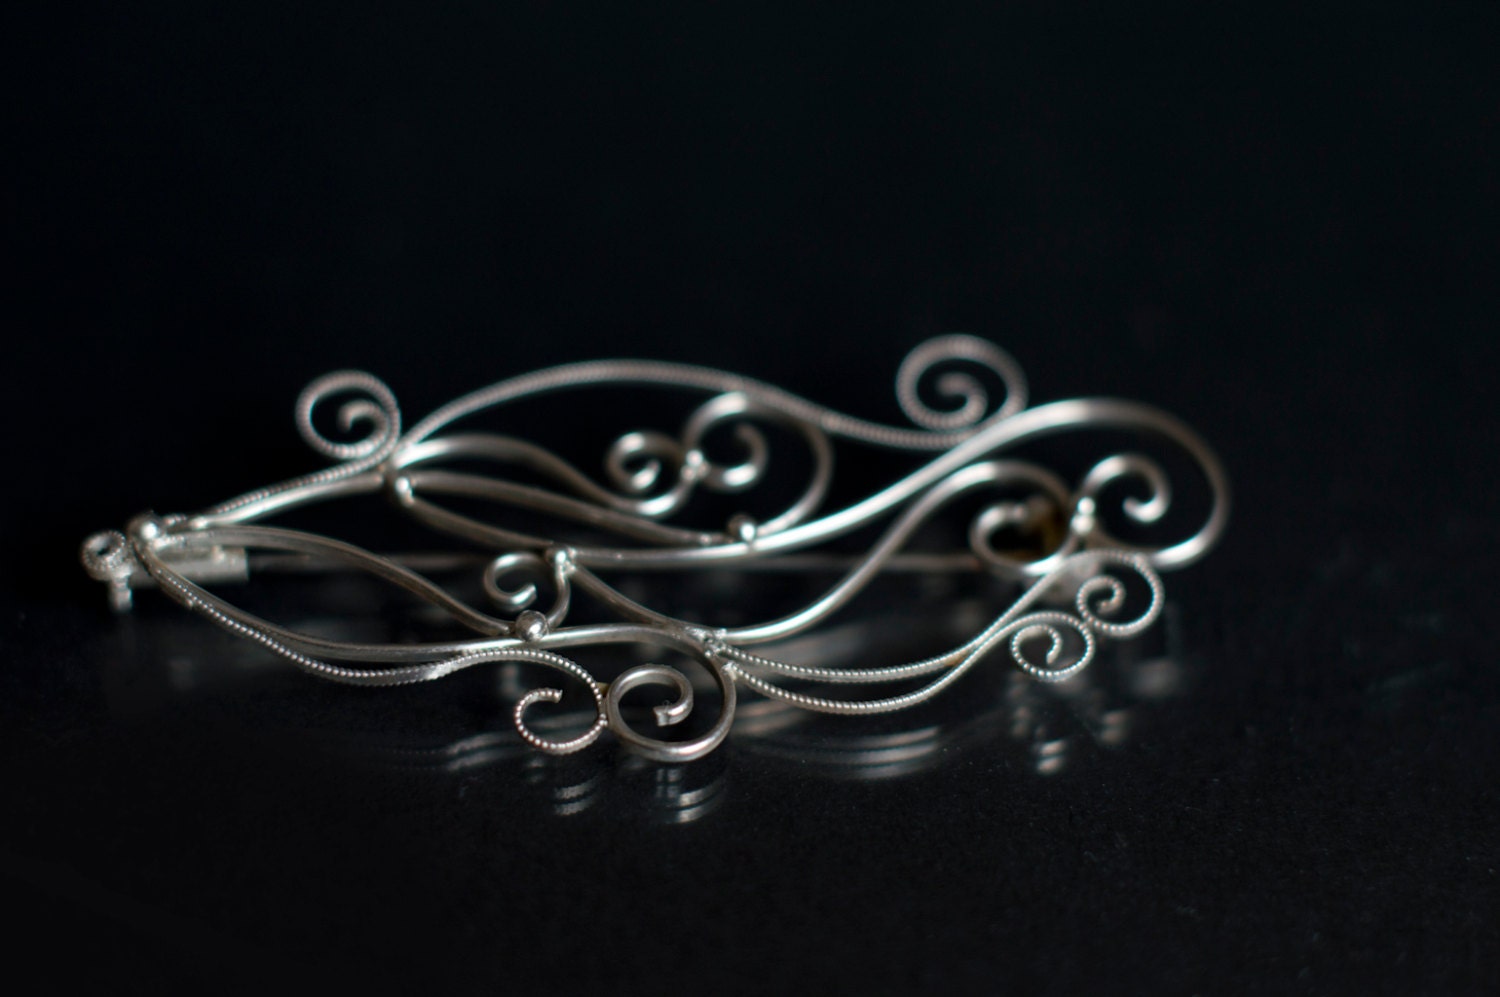 Swirly Filigree Brooch - 925 Sterling Silver